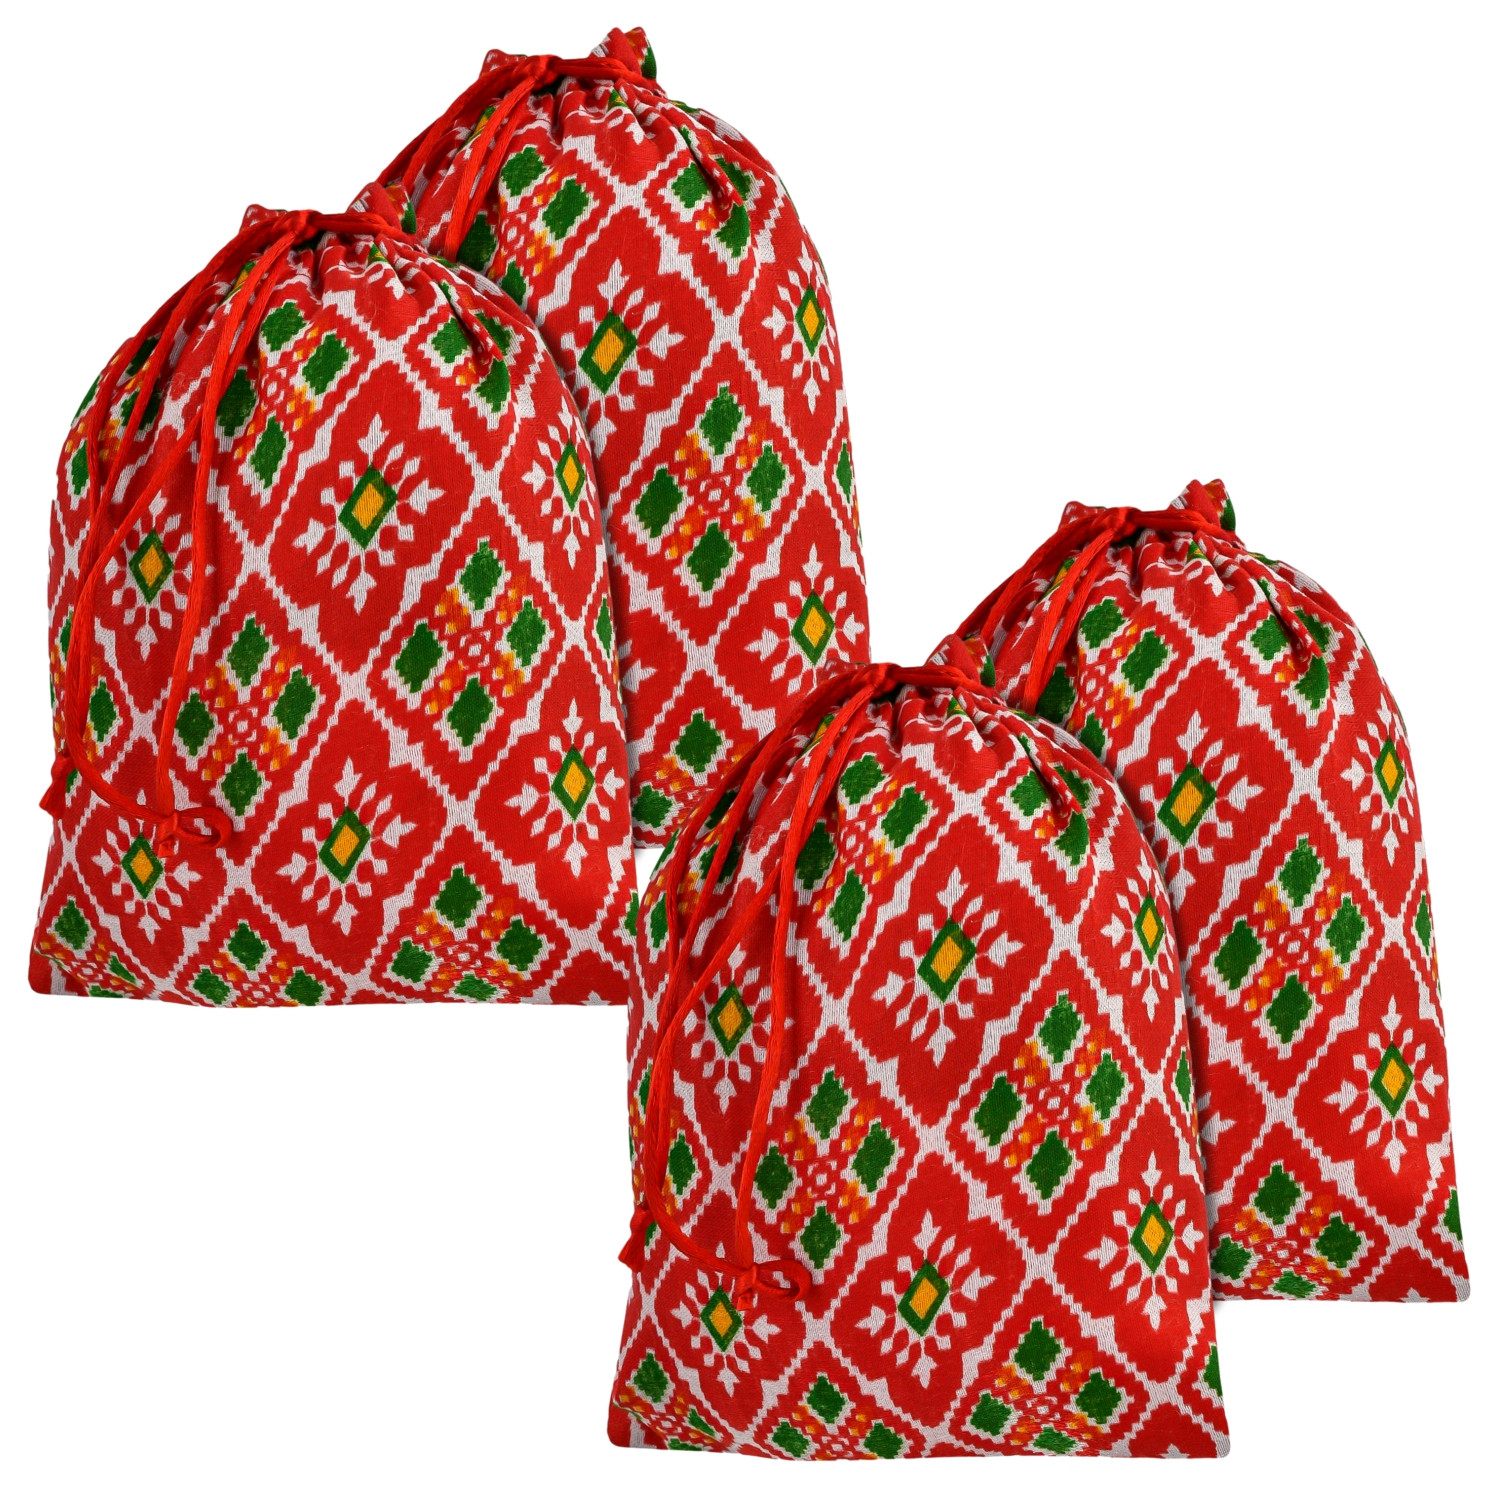 Kuber Industries Potli | Silk Wedding Potli | Drawstring Closure Potli | Wallet Potli | Christmas Gift Potli | Baby Shower Potli | Medium-Patola-Print Potli | 7x9 Inch |Red